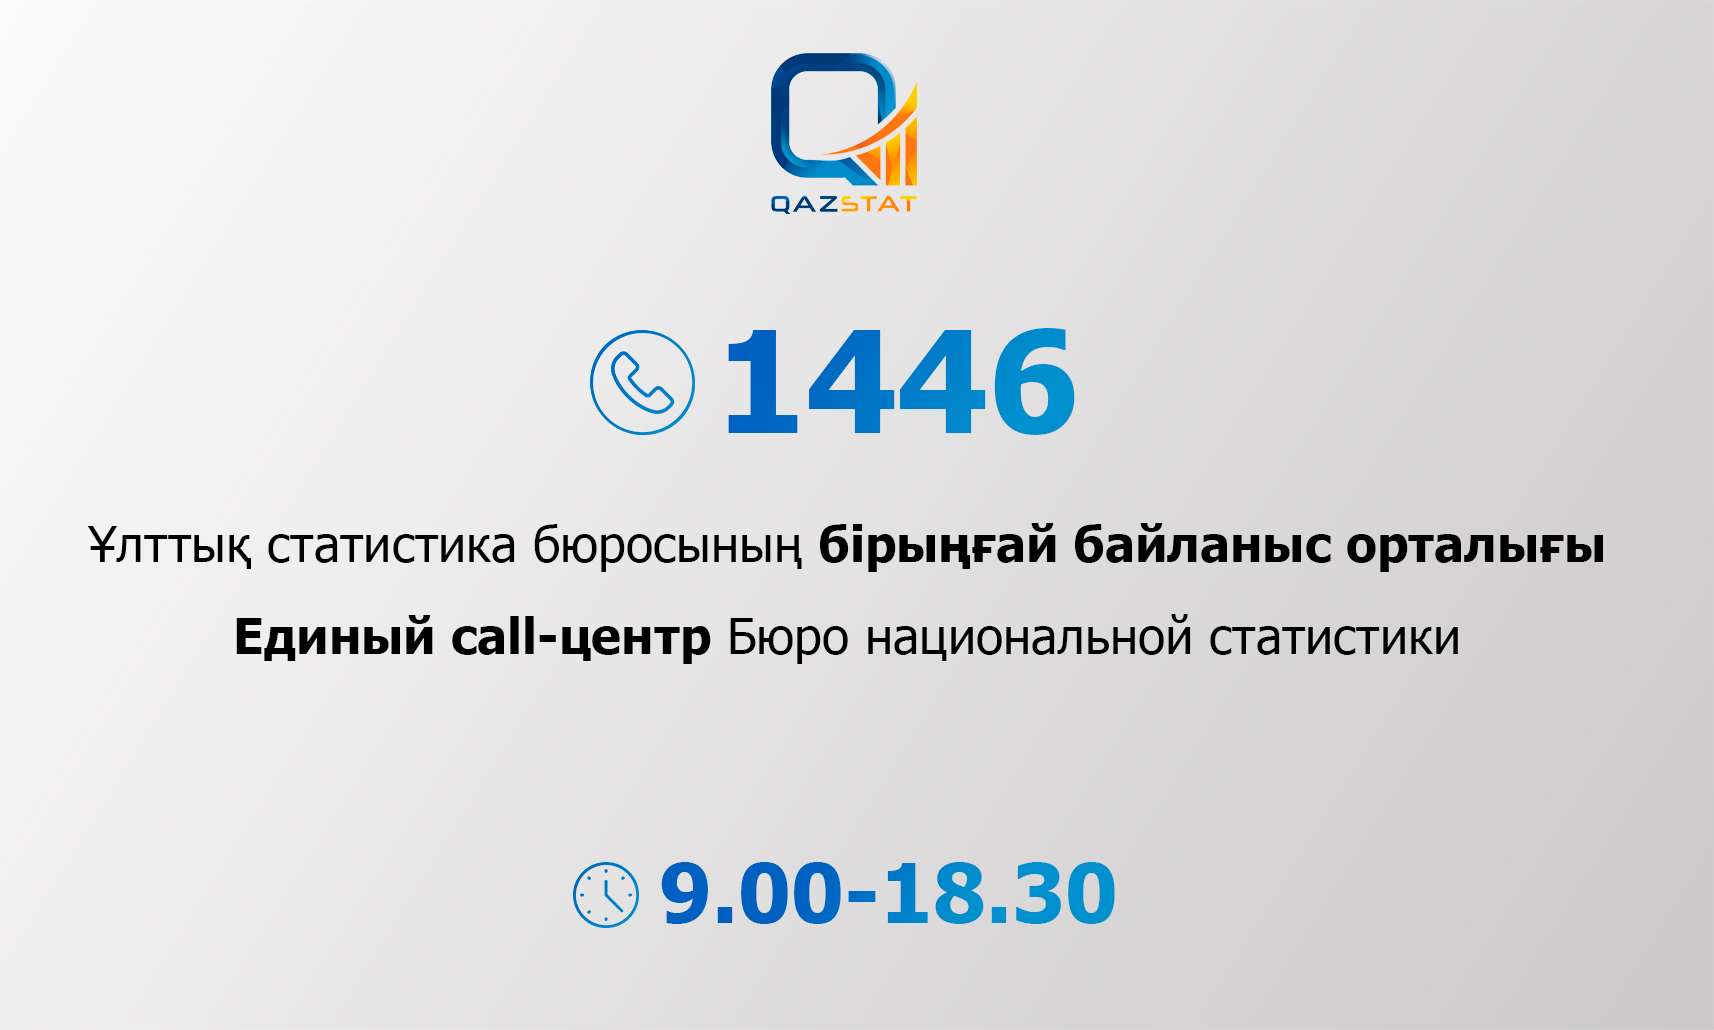 1446 – Контакт-центр по вопросам статистики запустили в Казахстане